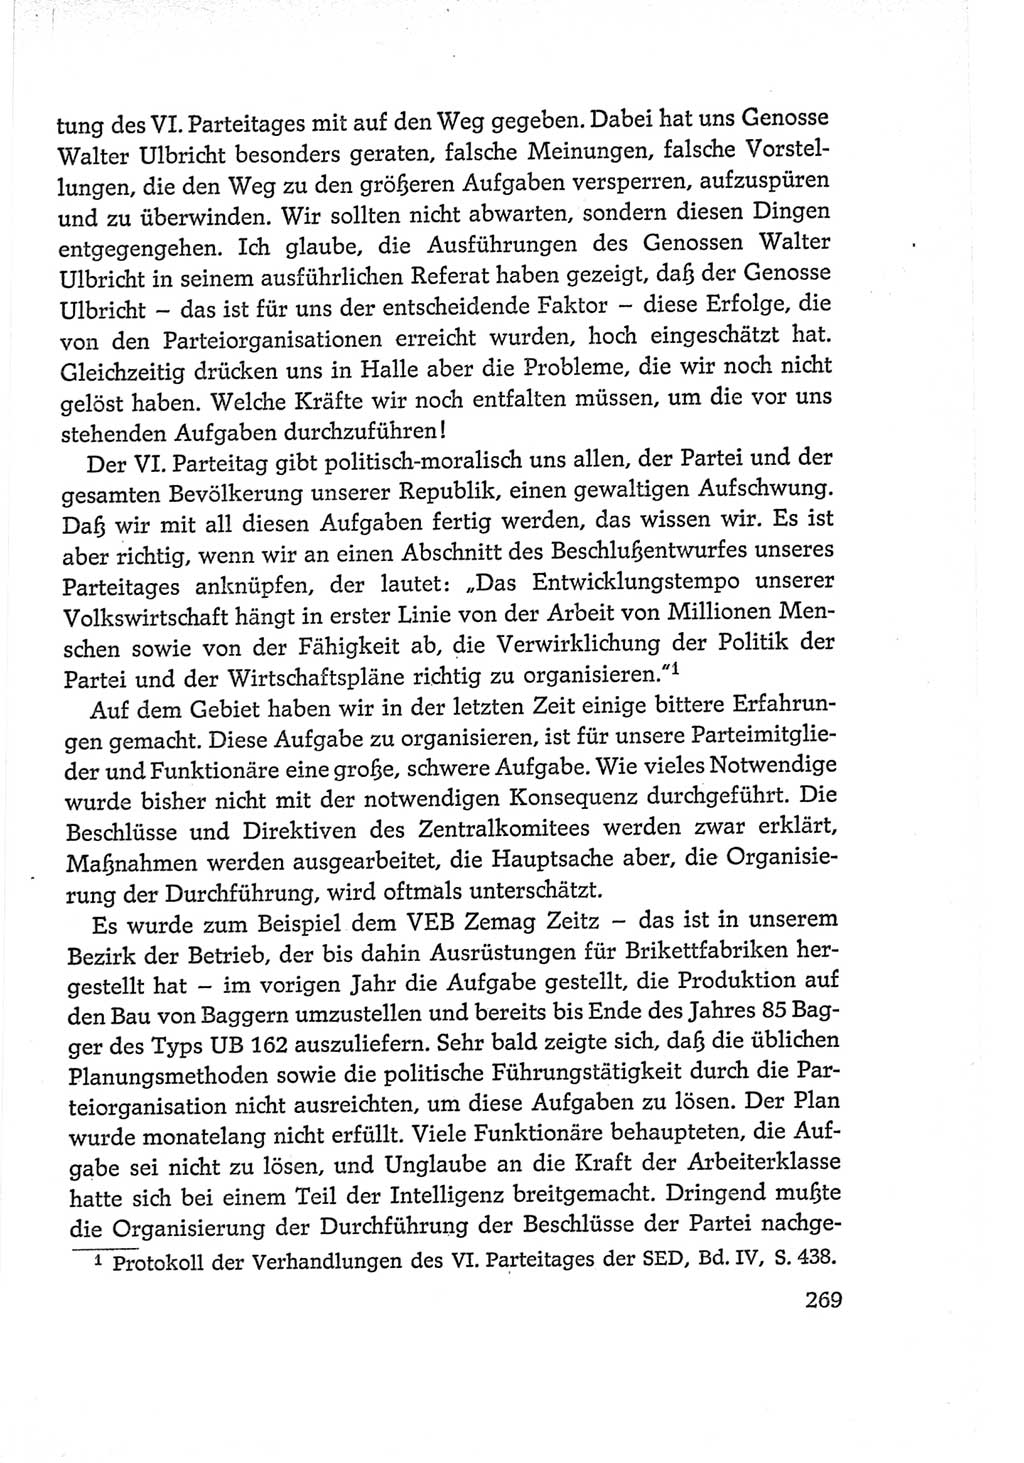 Protokoll der Verhandlungen des Ⅵ. Parteitages der Sozialistischen Einheitspartei Deutschlands (SED) [Deutsche Demokratische Republik (DDR)] 1963, Band Ⅱ, Seite 269 (Prot. Verh. Ⅵ. PT SED DDR 1963, Bd. Ⅱ, S. 269)